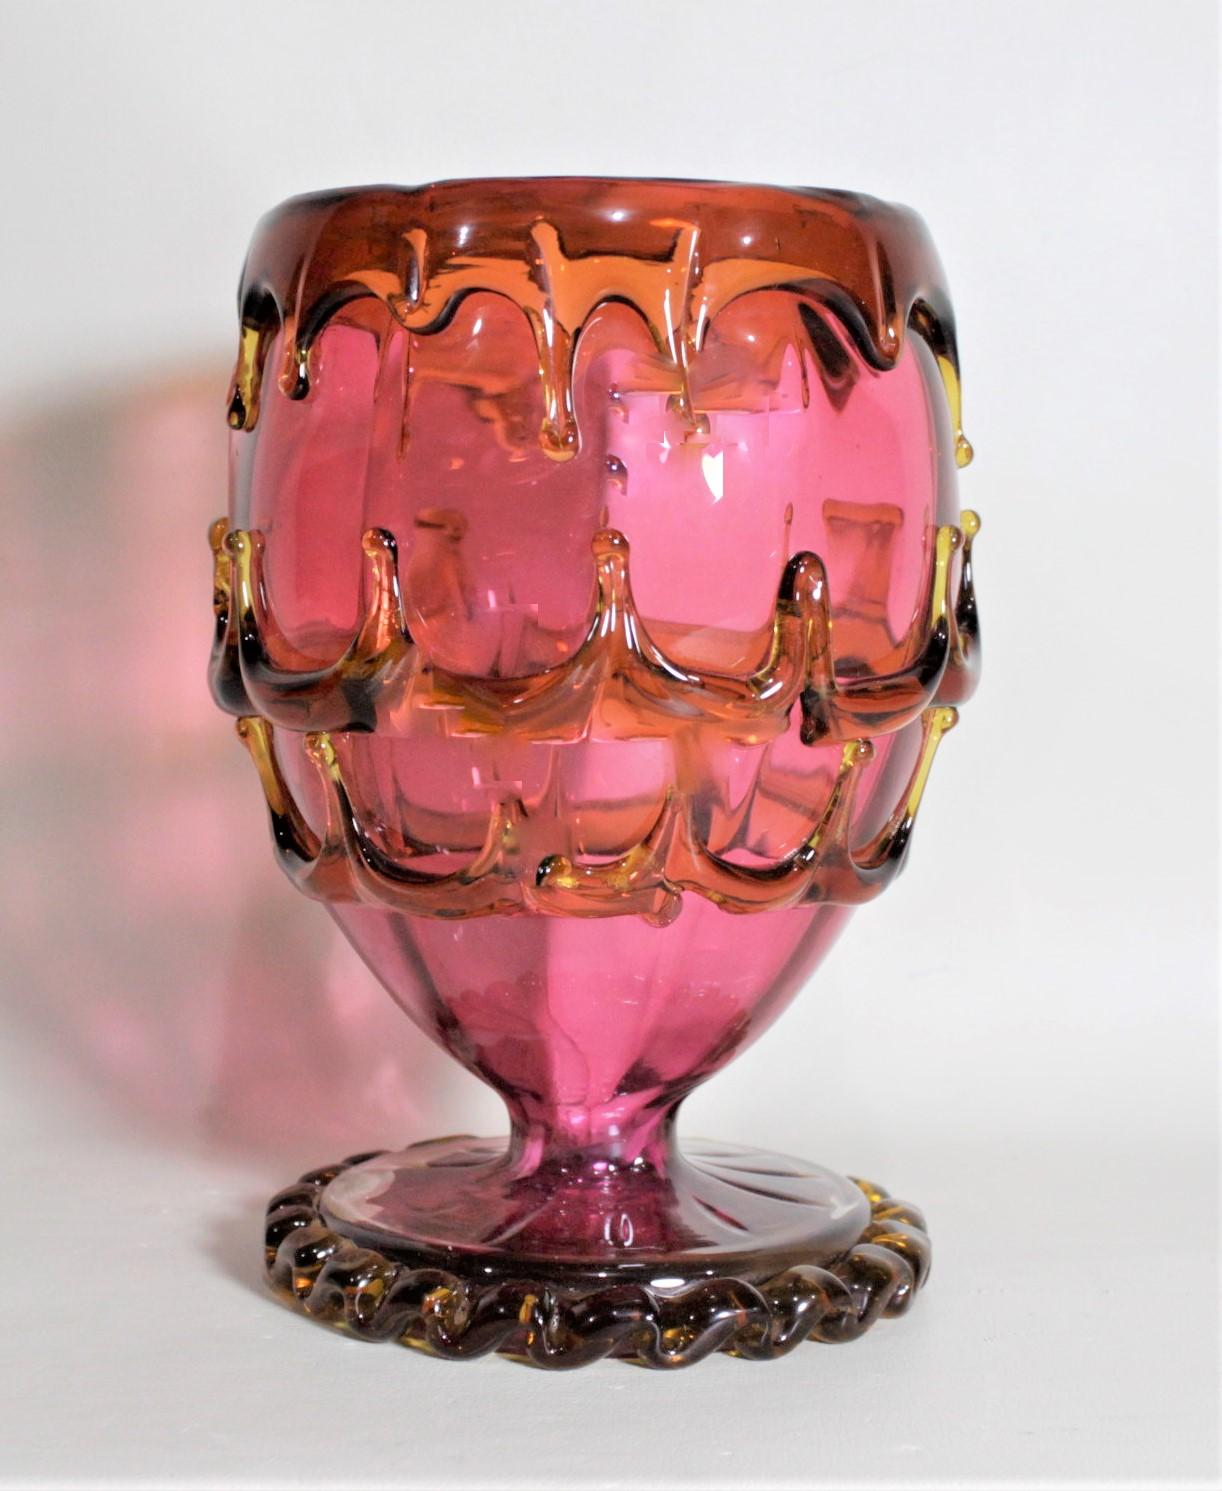 Cet ancien vase sur pied en forme de calice en canneberge n'est pas marqué mais on pense qu'il a été fabriqué en Bohême vers 1880. Ce vase sur pied est tout à fait unique en ce sens qu'il présente un verre appliqué ou drapé de couleur orange ou